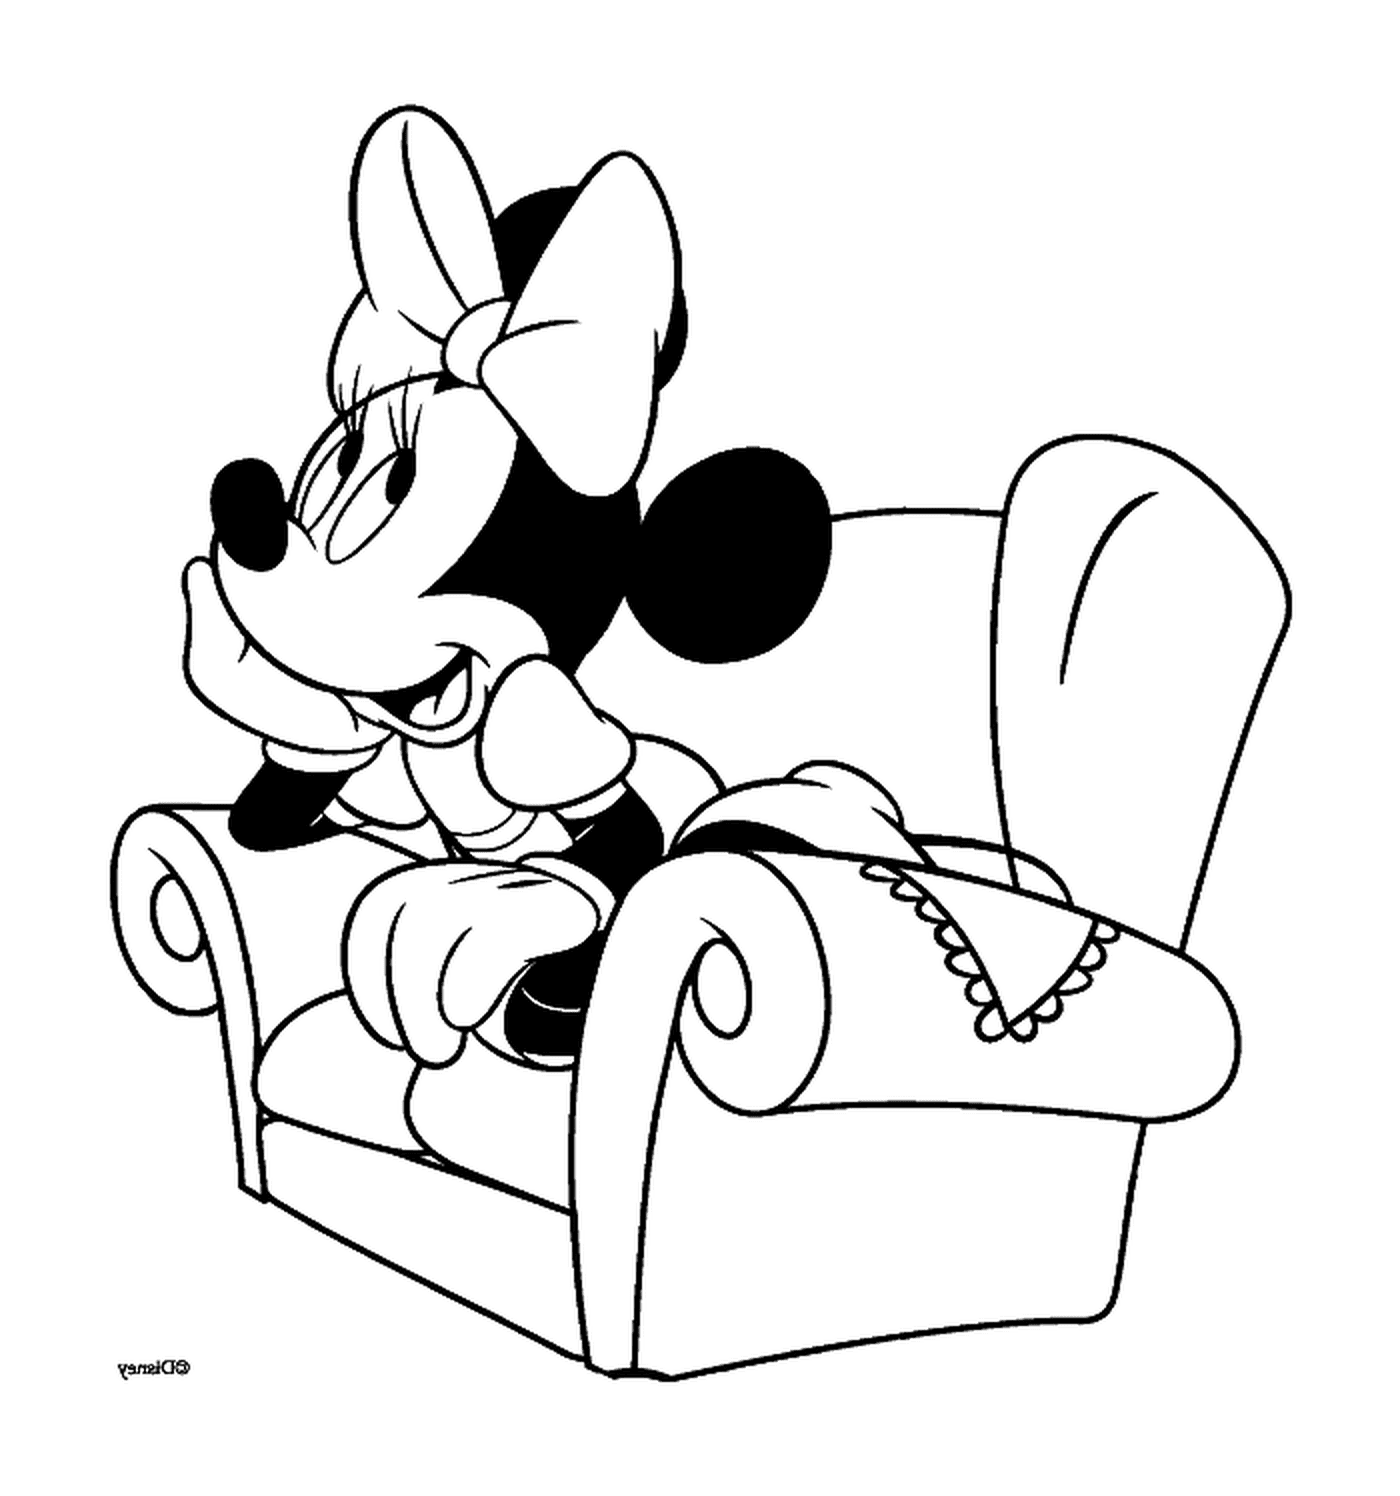  Minnie dreams on her armchair 